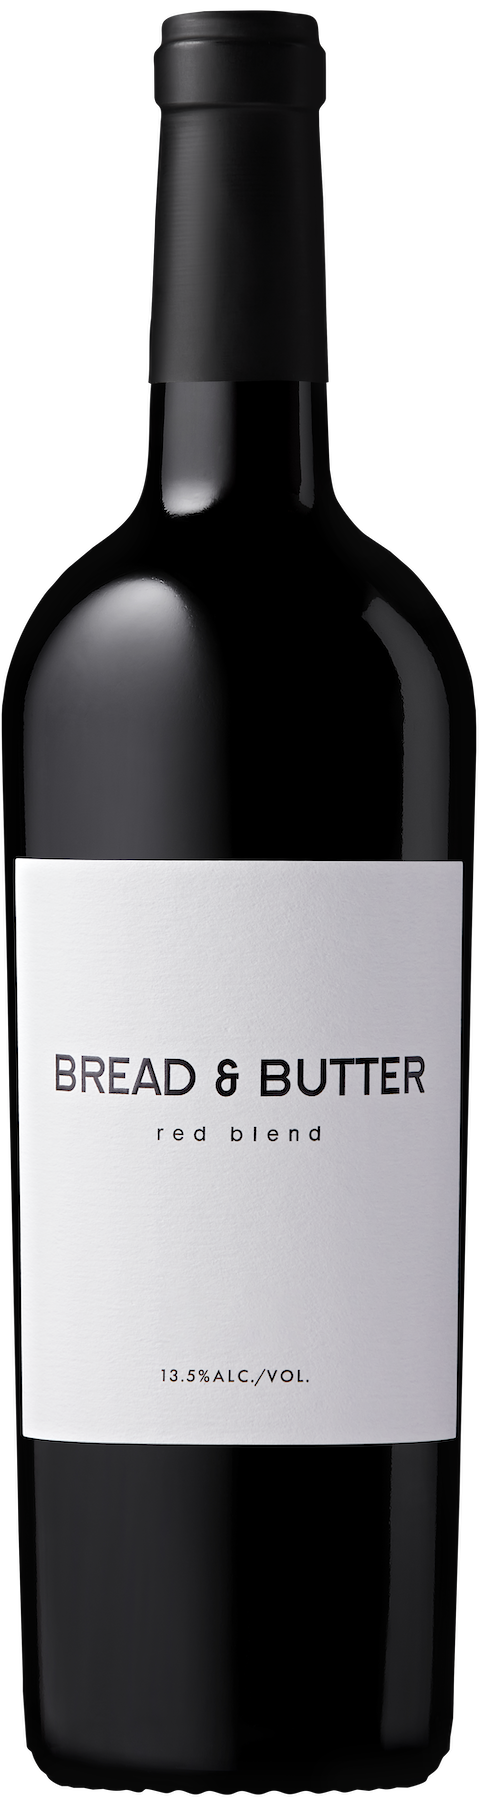 GARLIC BUTTER - Bread & Butter Wines